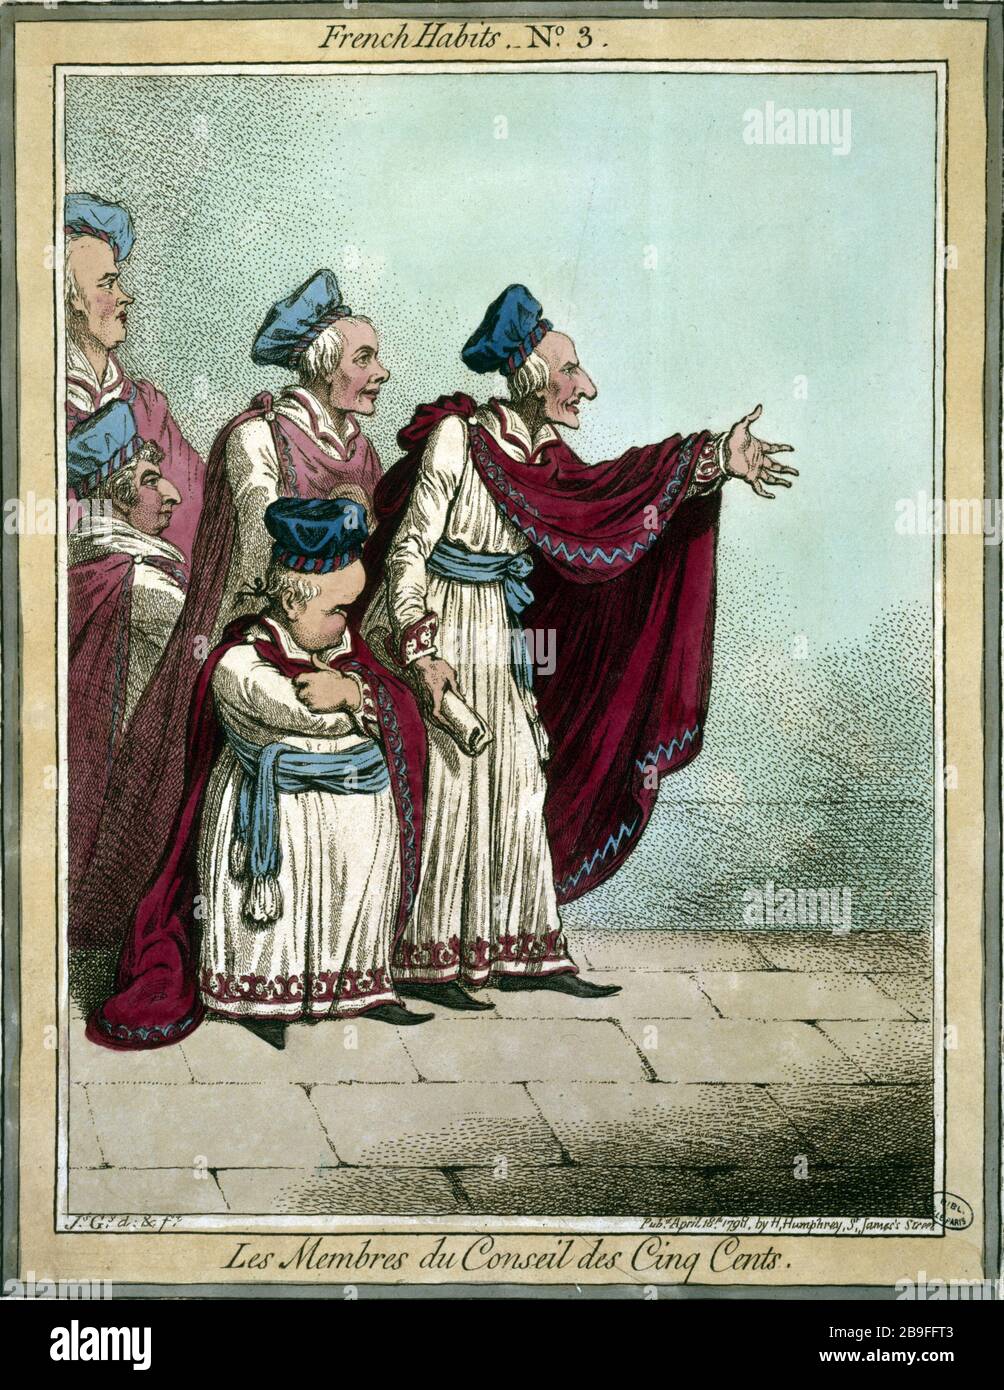 FRENCH CLOTHES, NUMBER 3: THE BOARD OF FIVE CENTS James Gillray (1757-1815). 'French habits, numéro 3 : les membres du Conseil des Cinq Cents'. Gravure. Paris, musée Carnavalet. Stock Photo